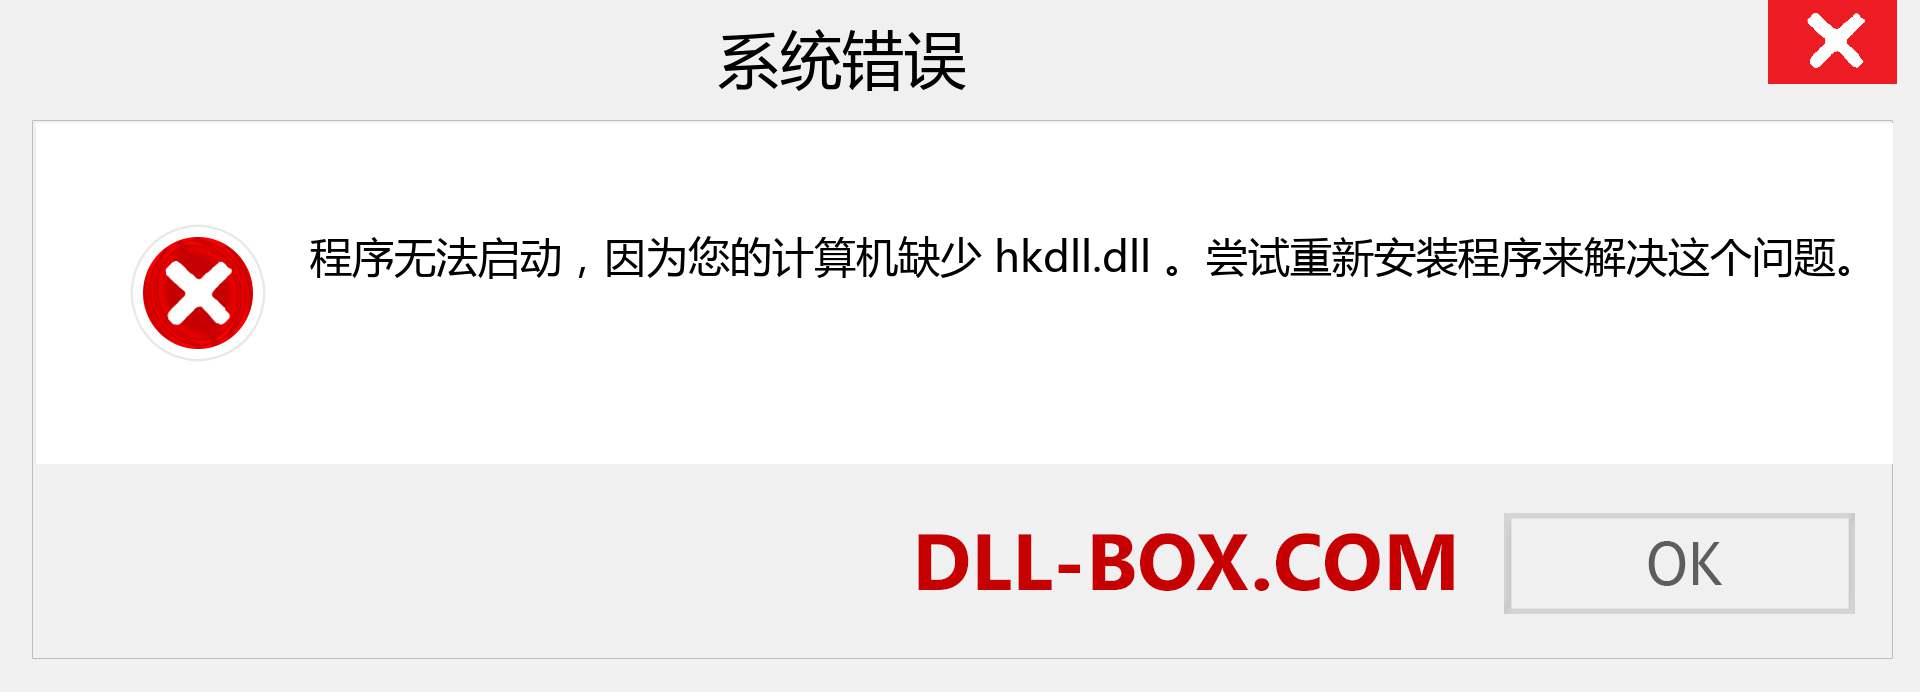 hkdll.dll 文件丢失？。 适用于 Windows 7、8、10 的下载 - 修复 Windows、照片、图像上的 hkdll dll 丢失错误